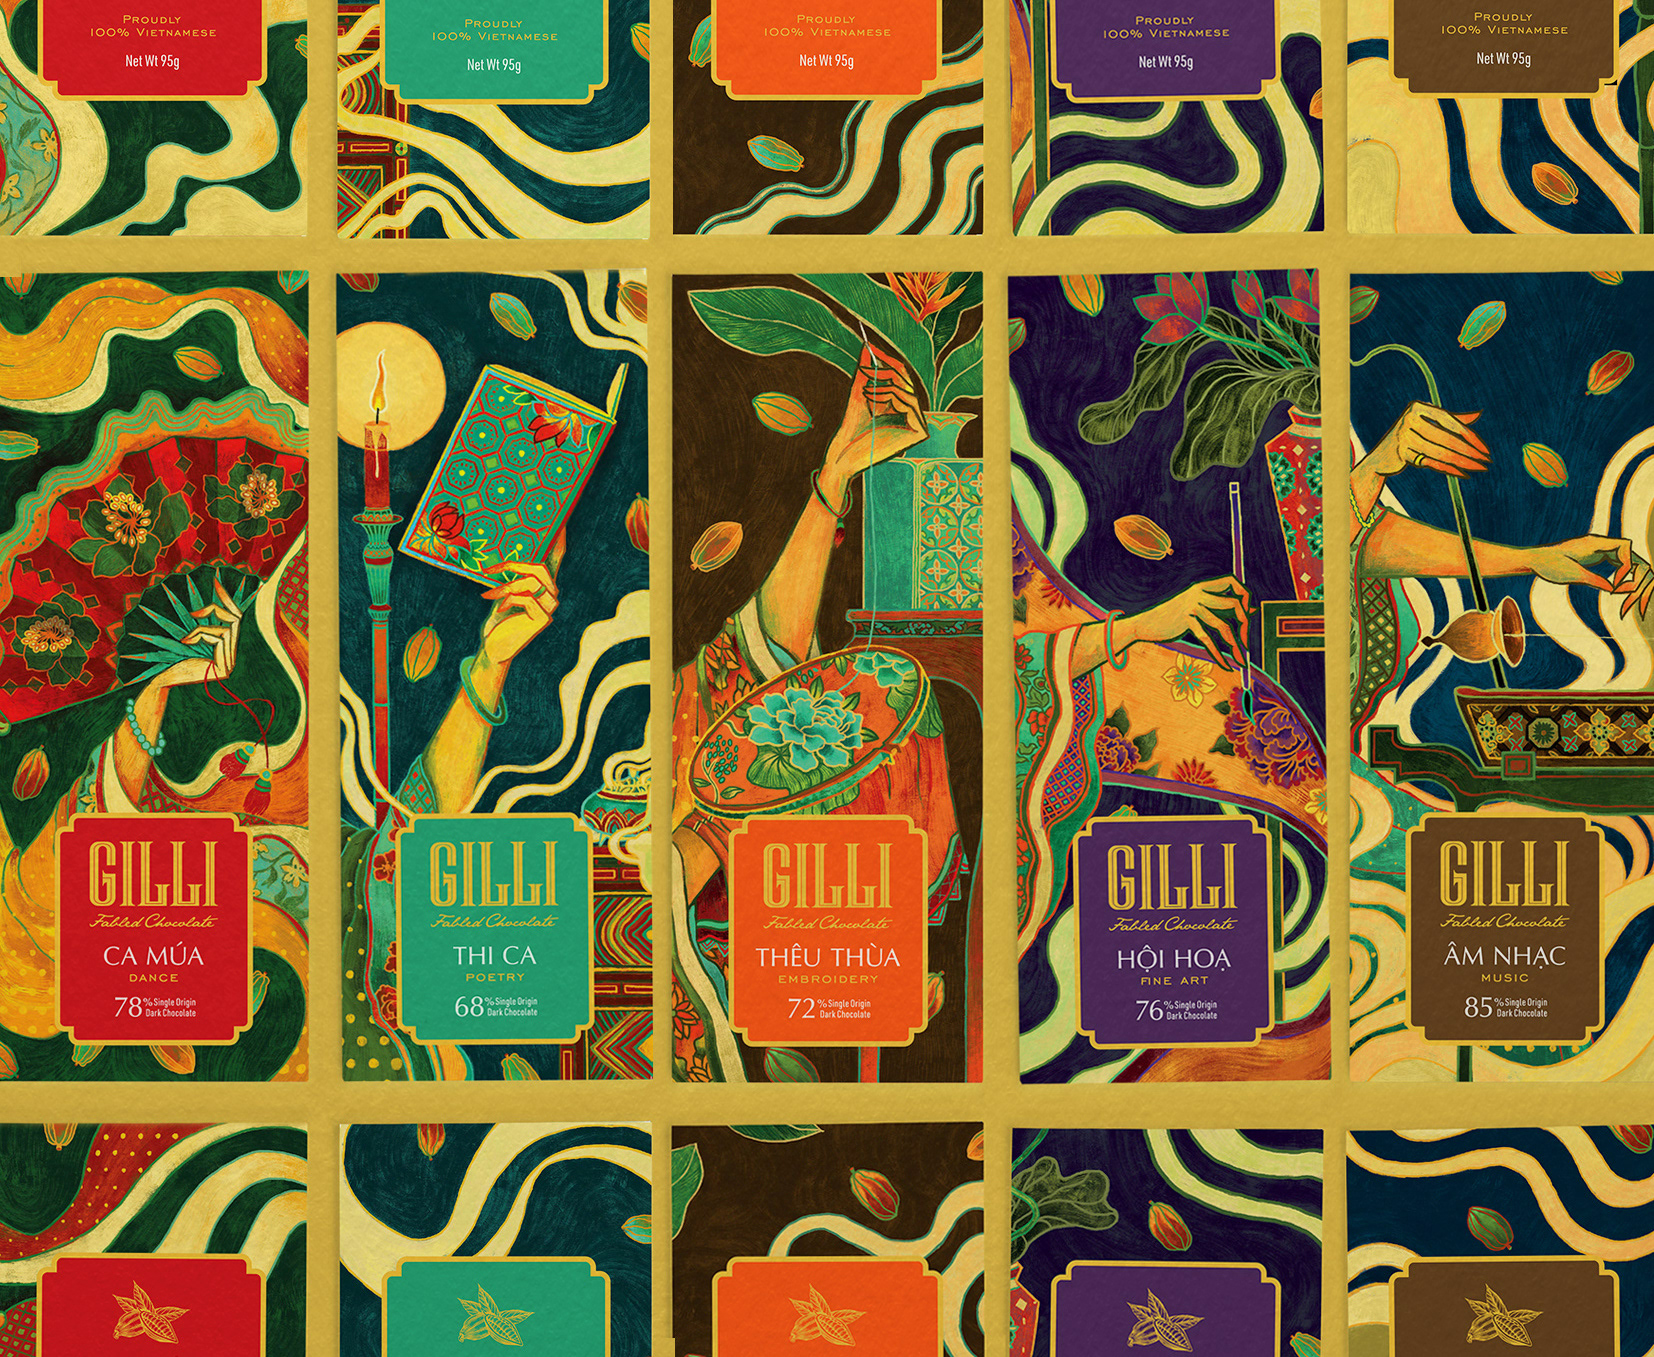 iDesign | Lấy cảm hứng từ tranh tố nữ, Dusse Bui thiết kế bao bì chocolate Gilli đậm đà văn hoá Việt